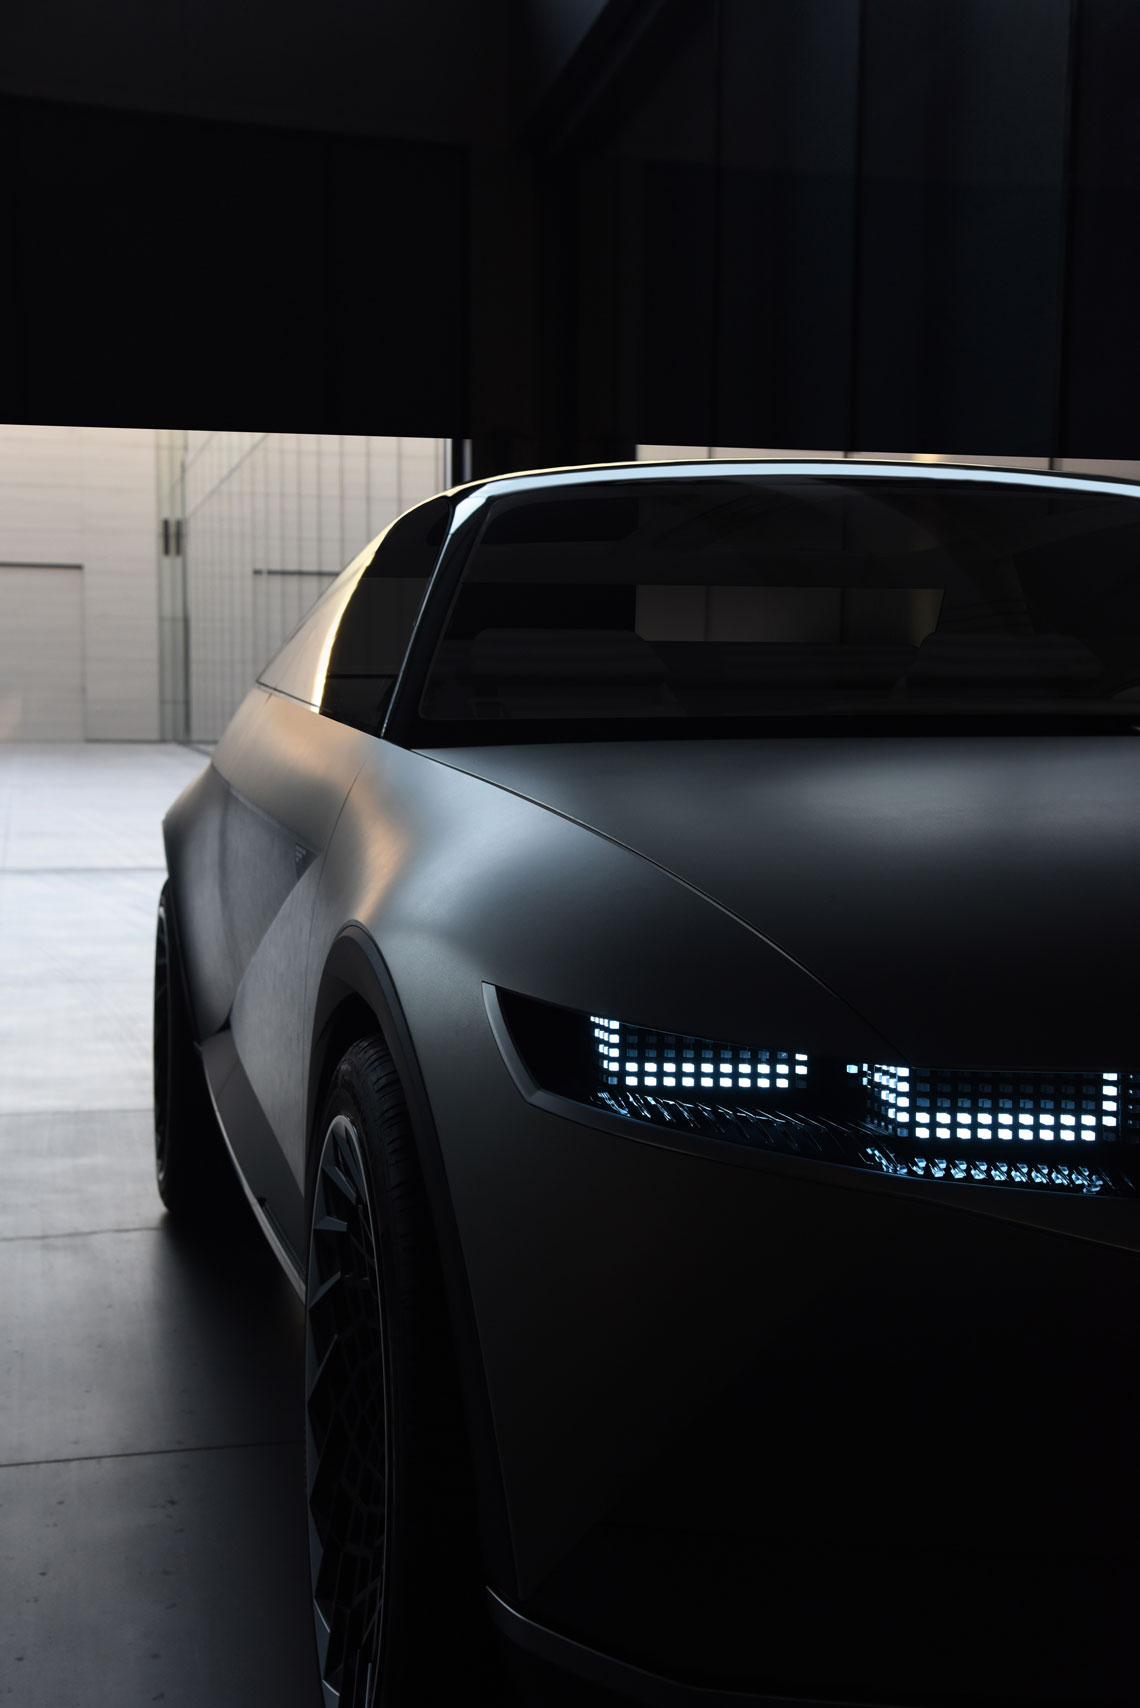 El diseño del sistema de iluminación de Hyundai se lleva a un nuevo nivel. En la parte inferior de las puertas delanteras hay indicadores de batería LED incorporados: el "estado" es visible desde lejos.